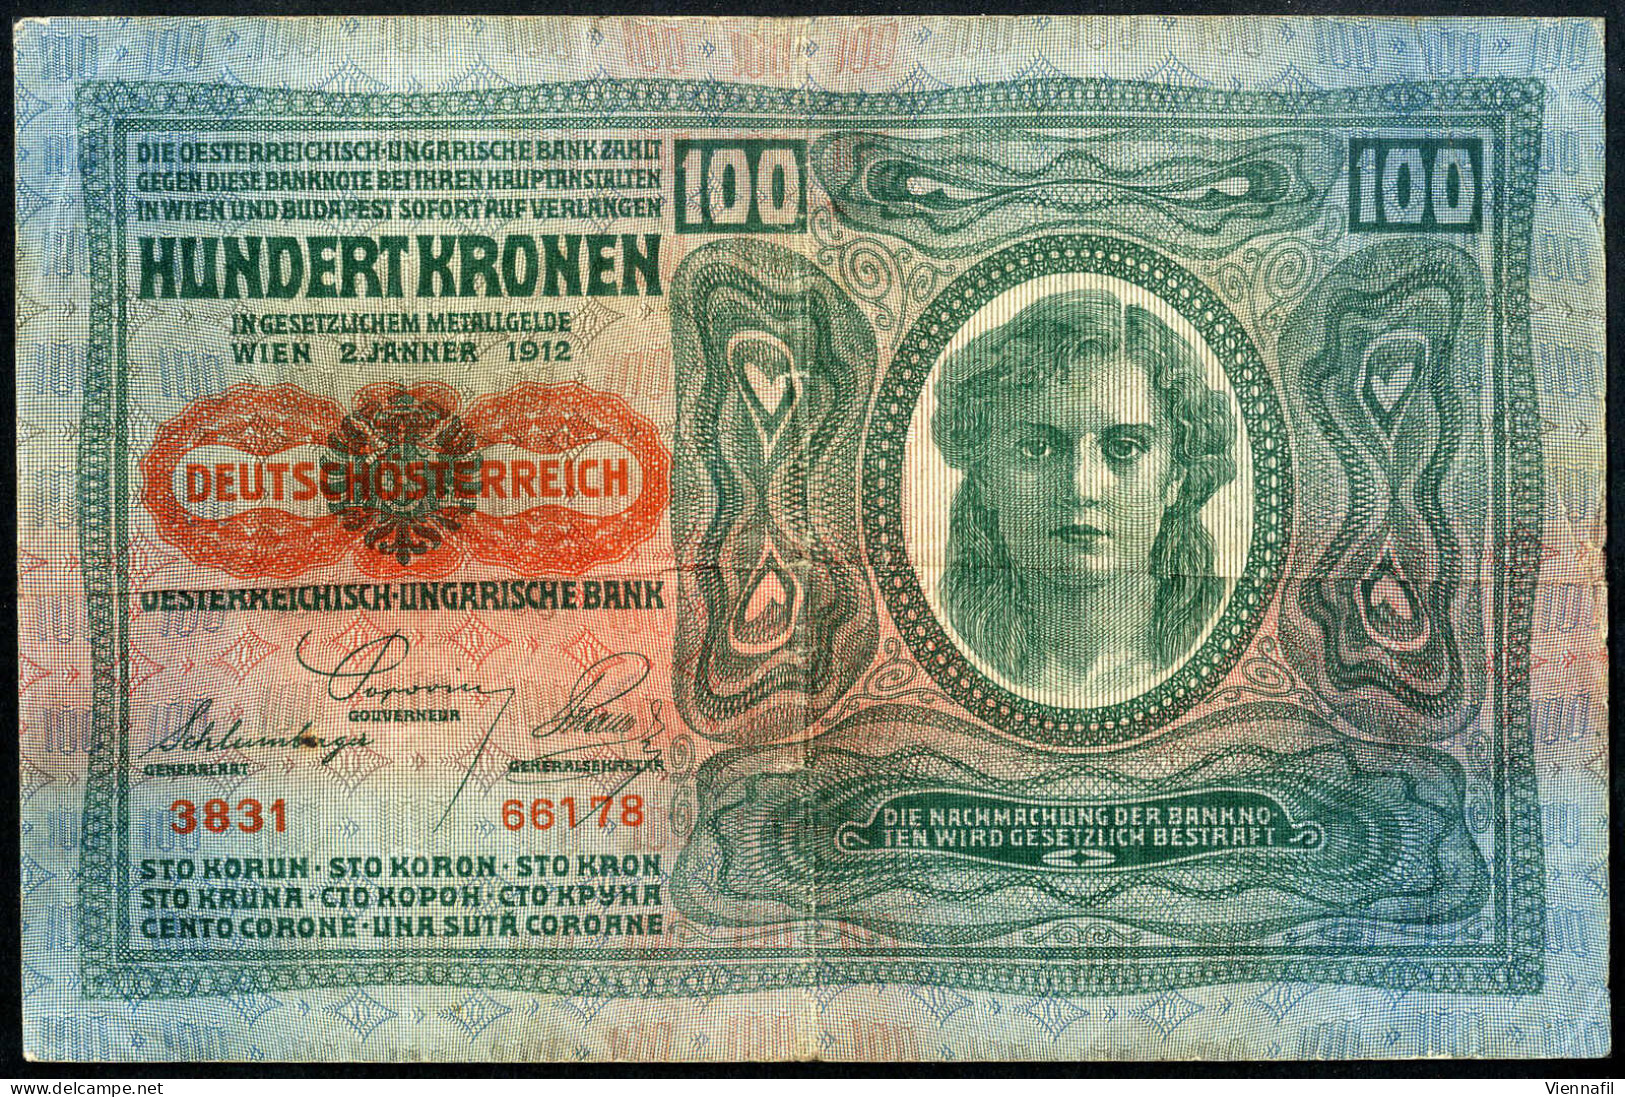 cover Deutschland, Übersee, Lot mit ca. 100 Banknoten, Abbildungen siehe Onlinekatalog